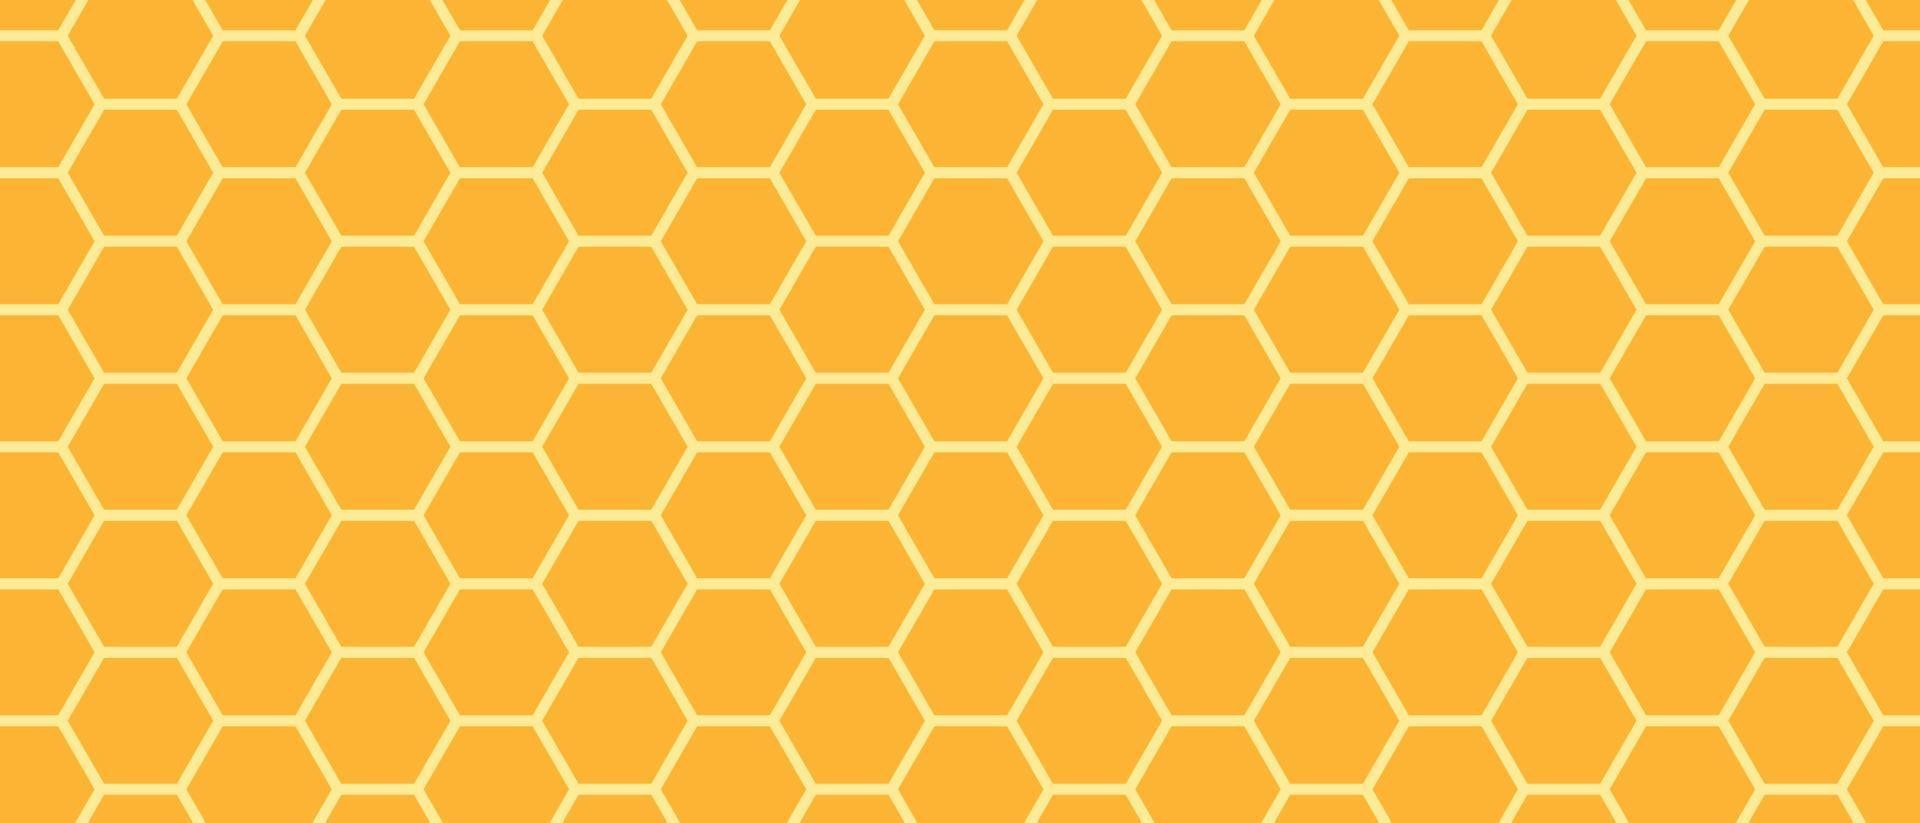 gyllene honungskamrasterstruktur och geometriska hexagonala bikakor. guld honung hexagonala celler sömlös konsistens. honeycombs ljus bakgrund. vektor illustration